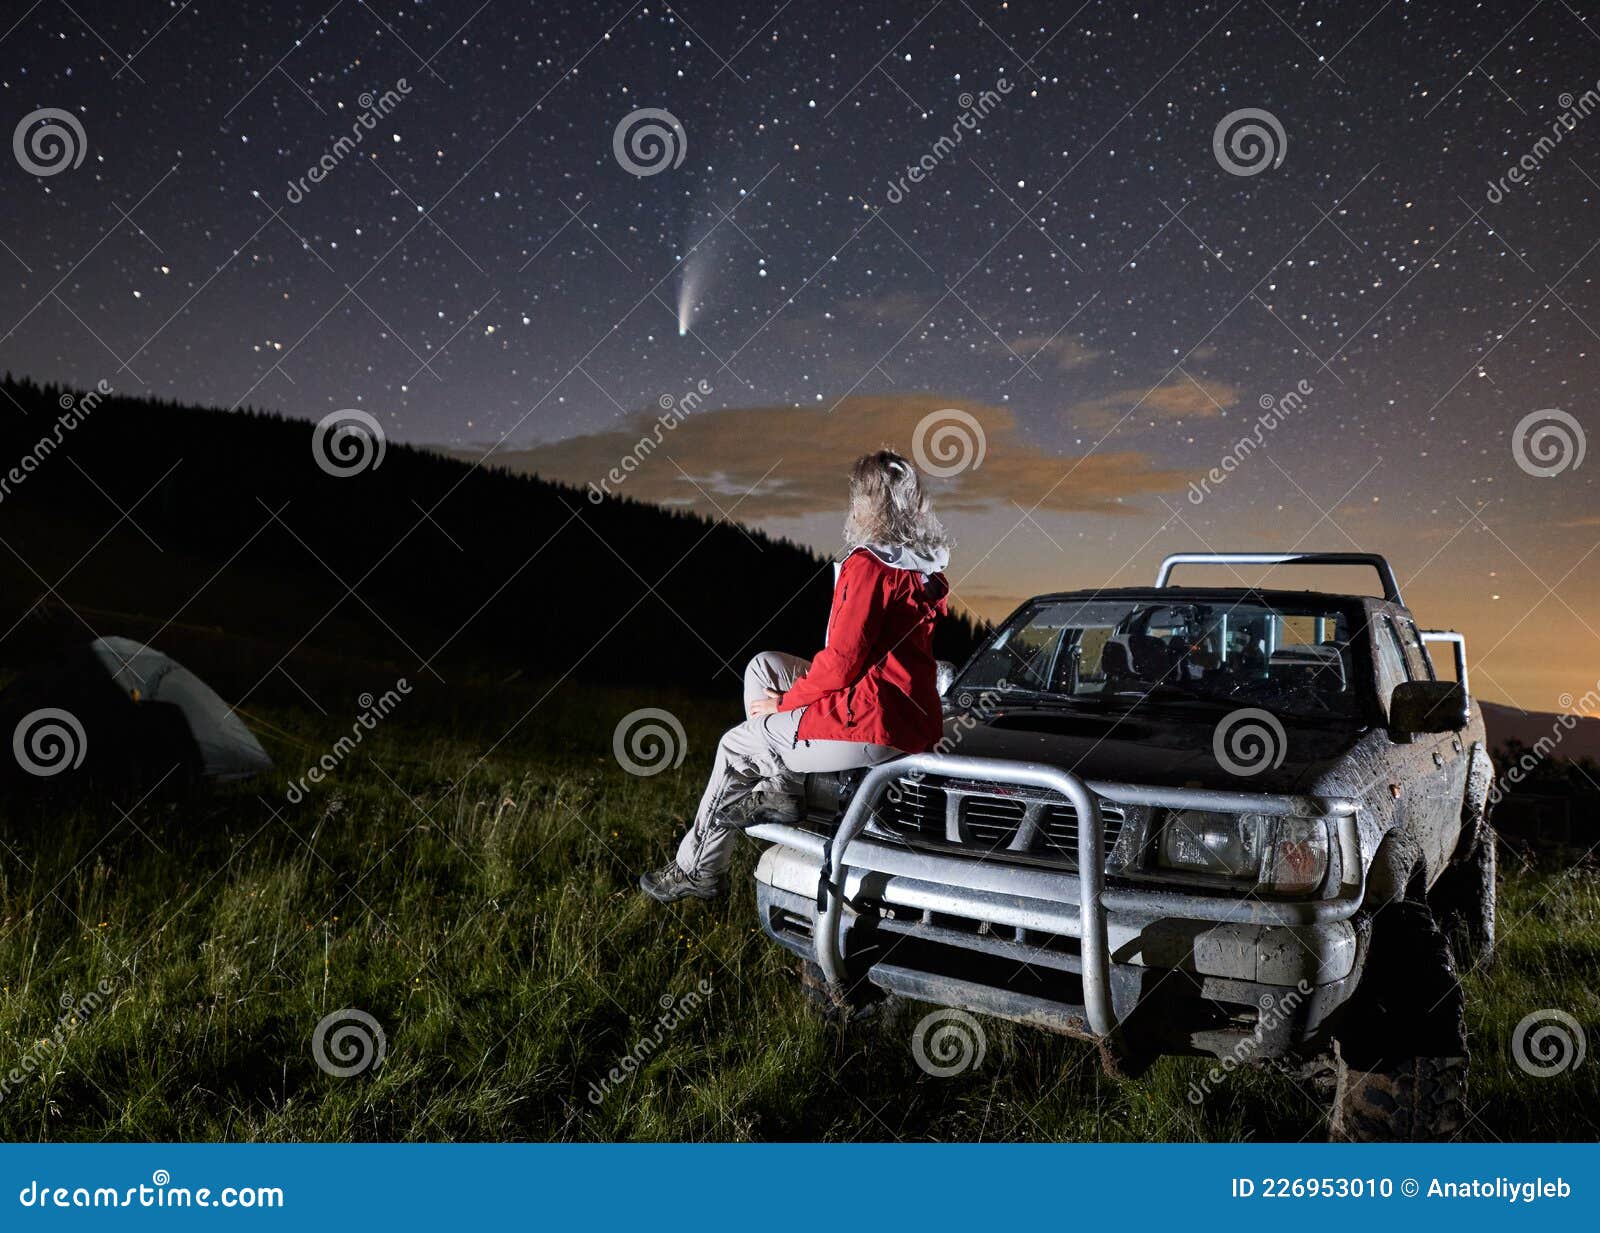 Donna Seduta Sul Cofano Dell'auto a Guardare Il Cielo Stellato. Fotografia  Stock - Immagine di campeggio, ricreazione: 226953010